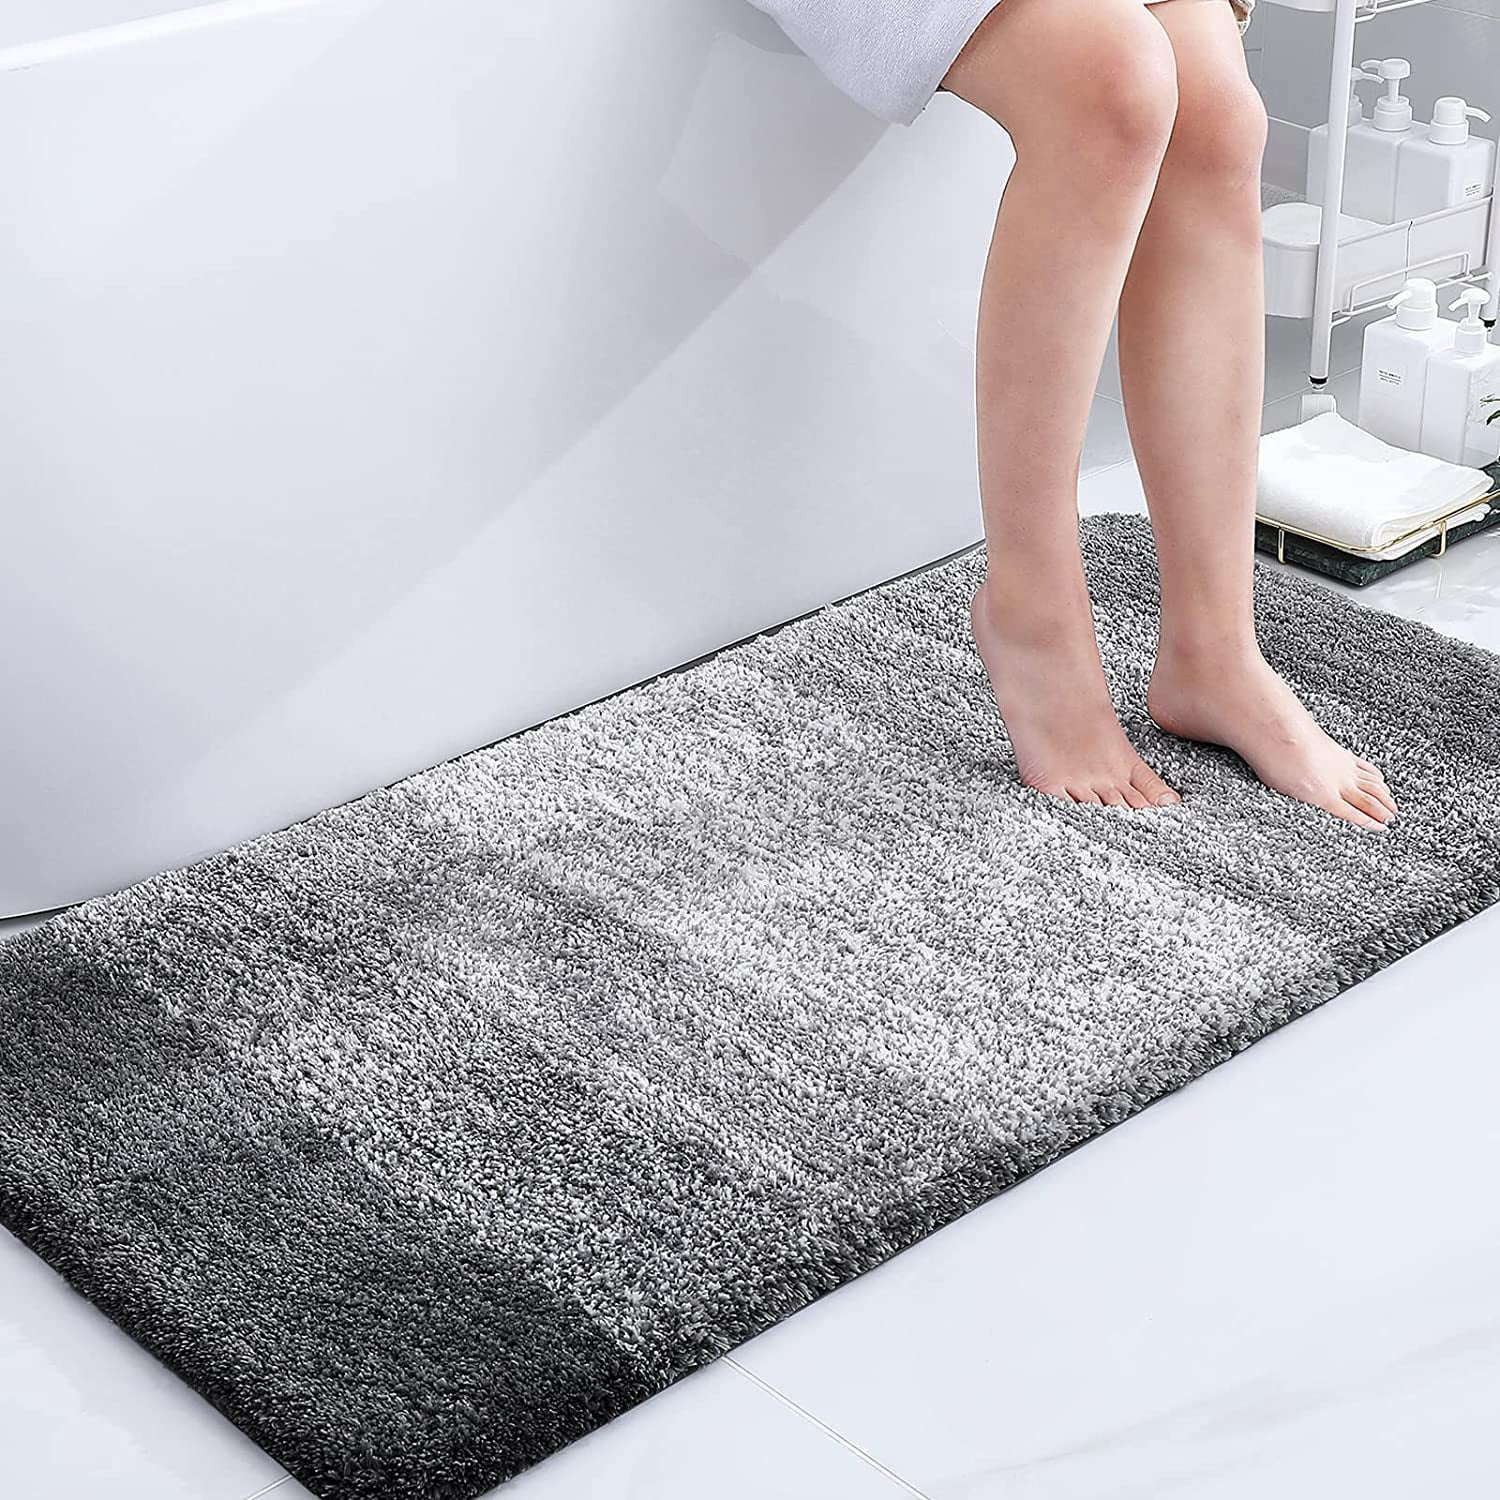 Olanly Bathroom Rugs Set 2 Pc Microfiber Bath Shower Mat U